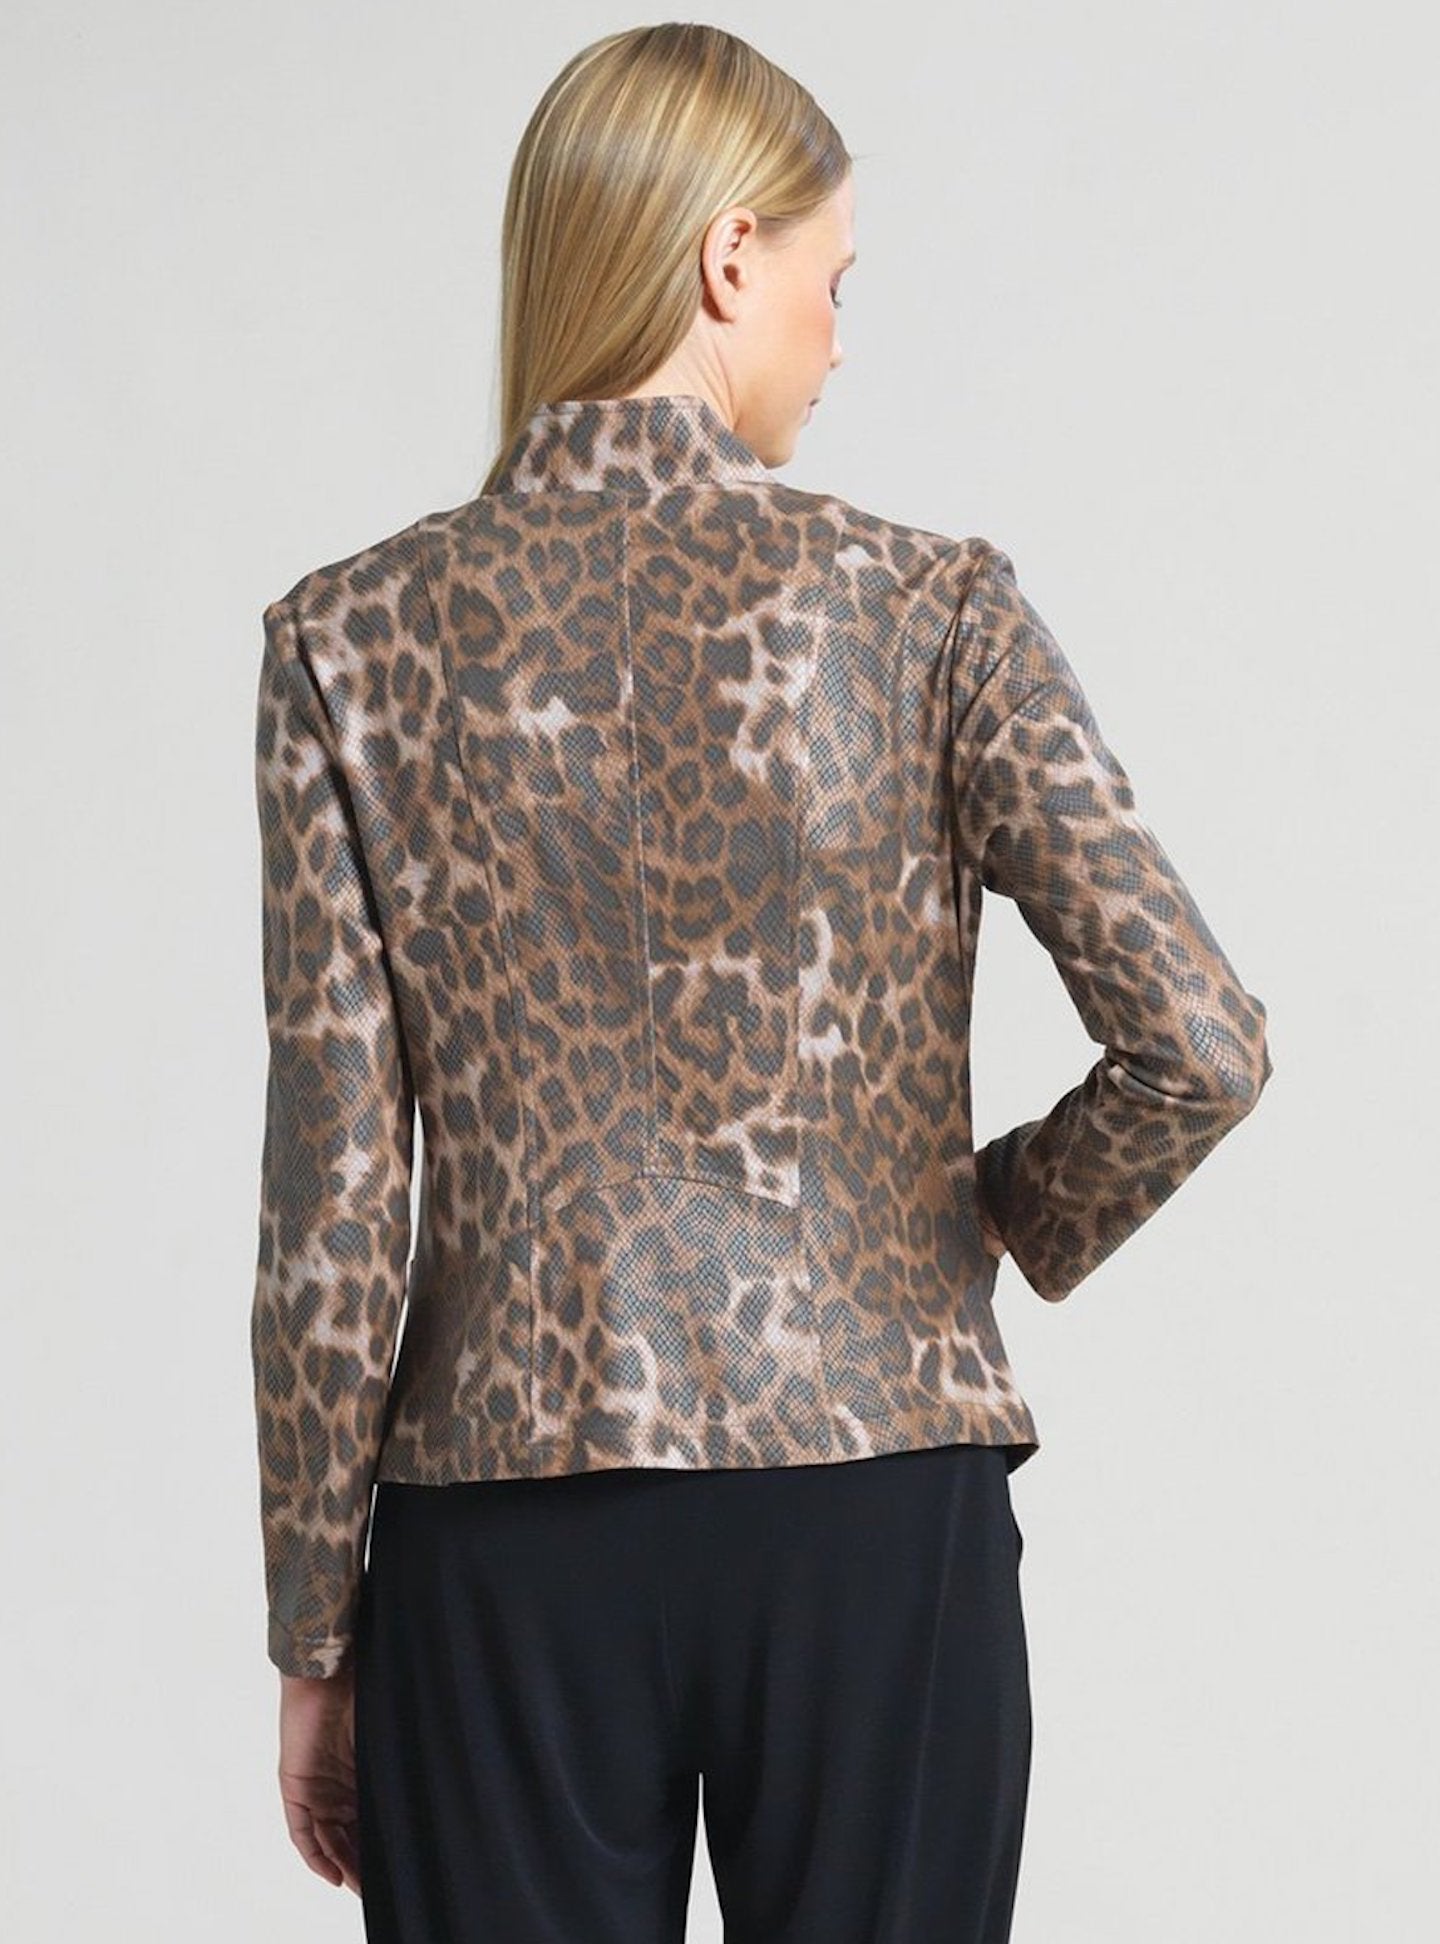 Liquid Leather Jacket Cheetah